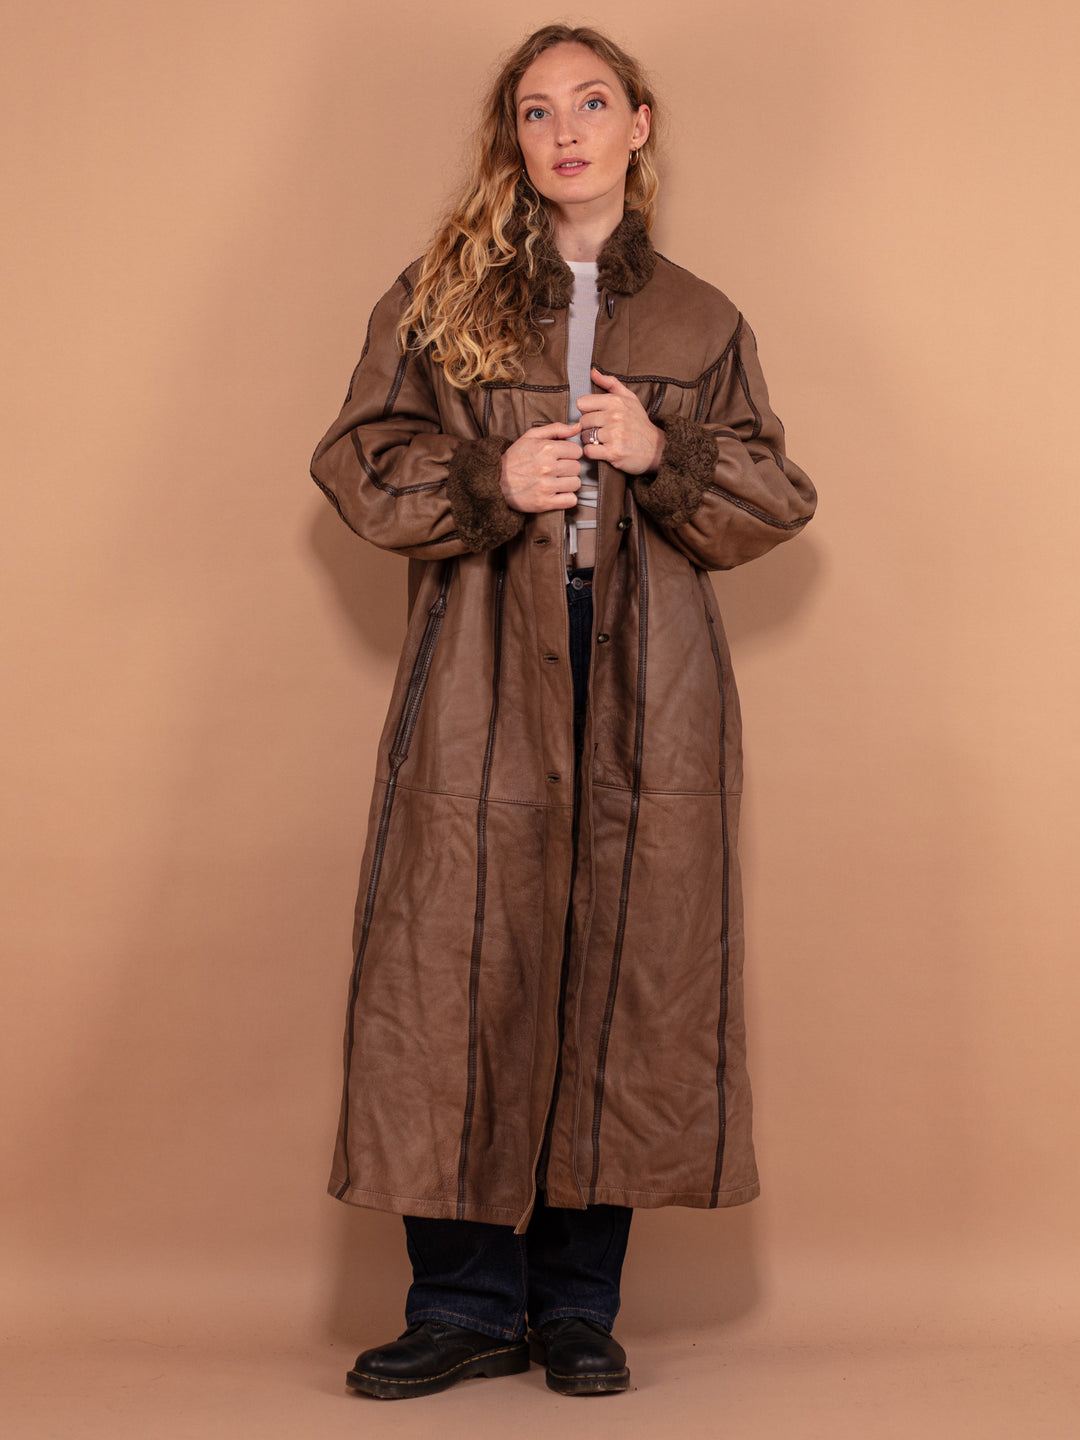 Sheepskin Long Coat, Size Large XL Warm Shearling Fur Coat, Brown Sheepskin Overcoat, Oversized Sheepskin Coat, Penny Lane, Winter Outerwear